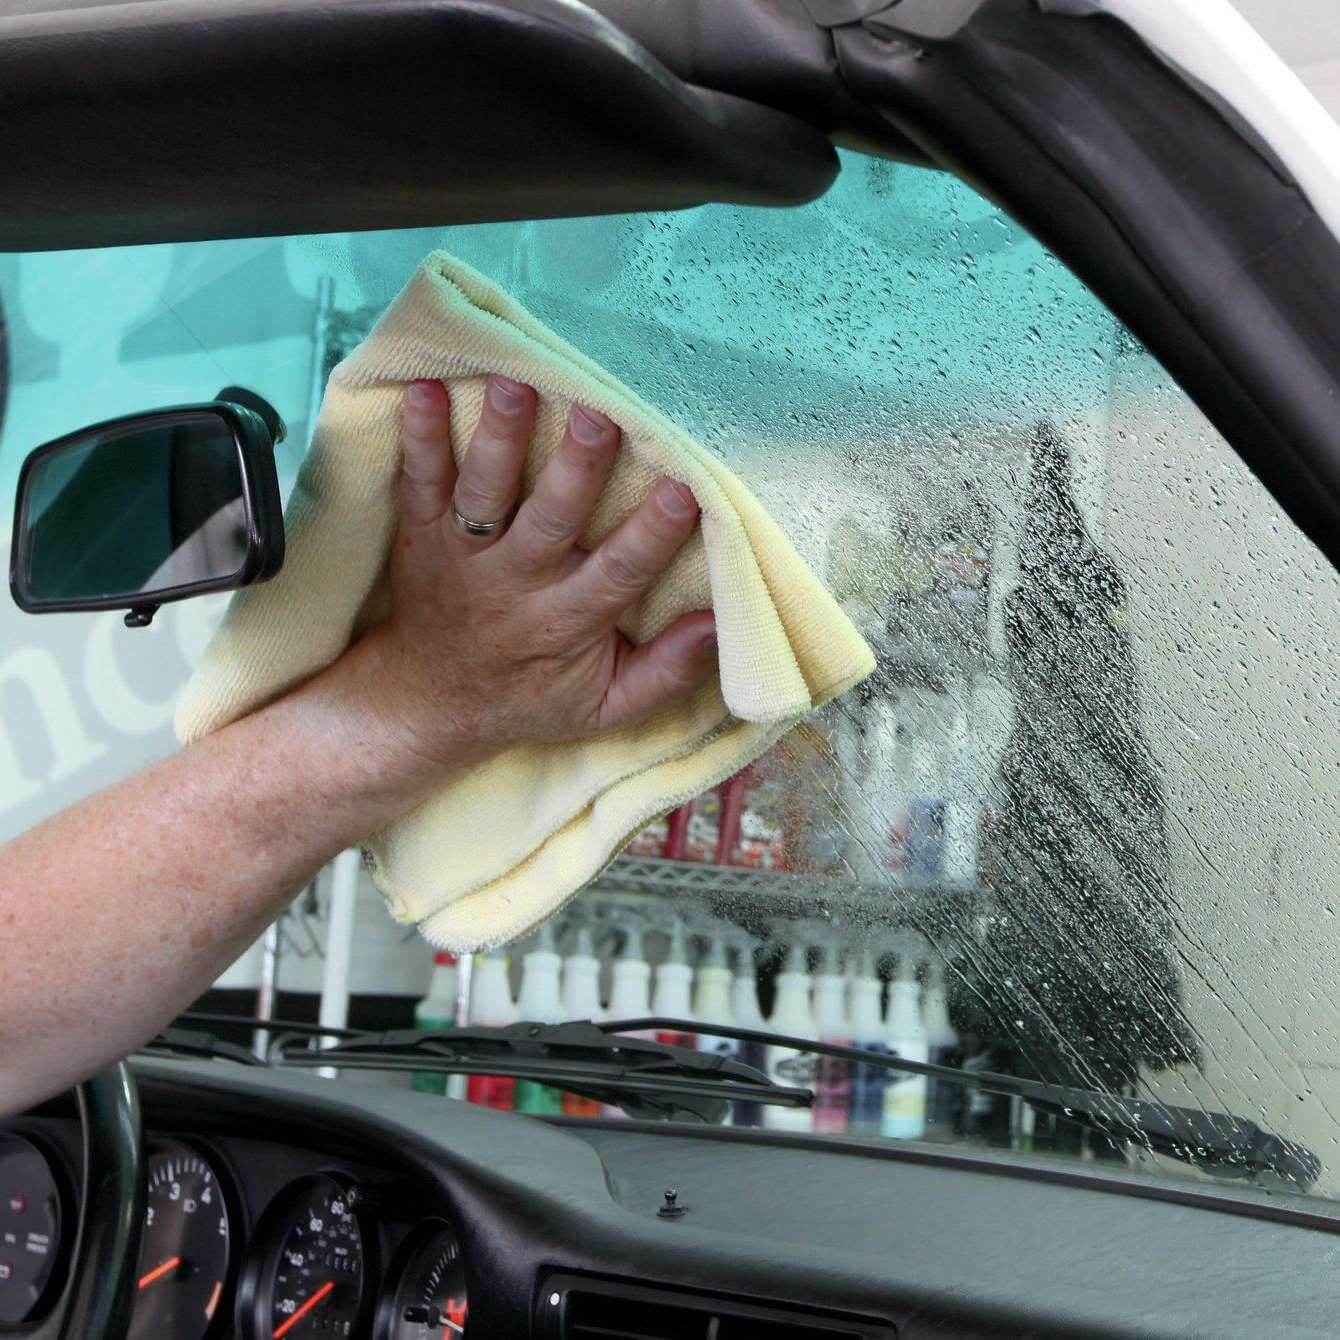 почему запотевают окна в машине изнутри зимой при включенной печке